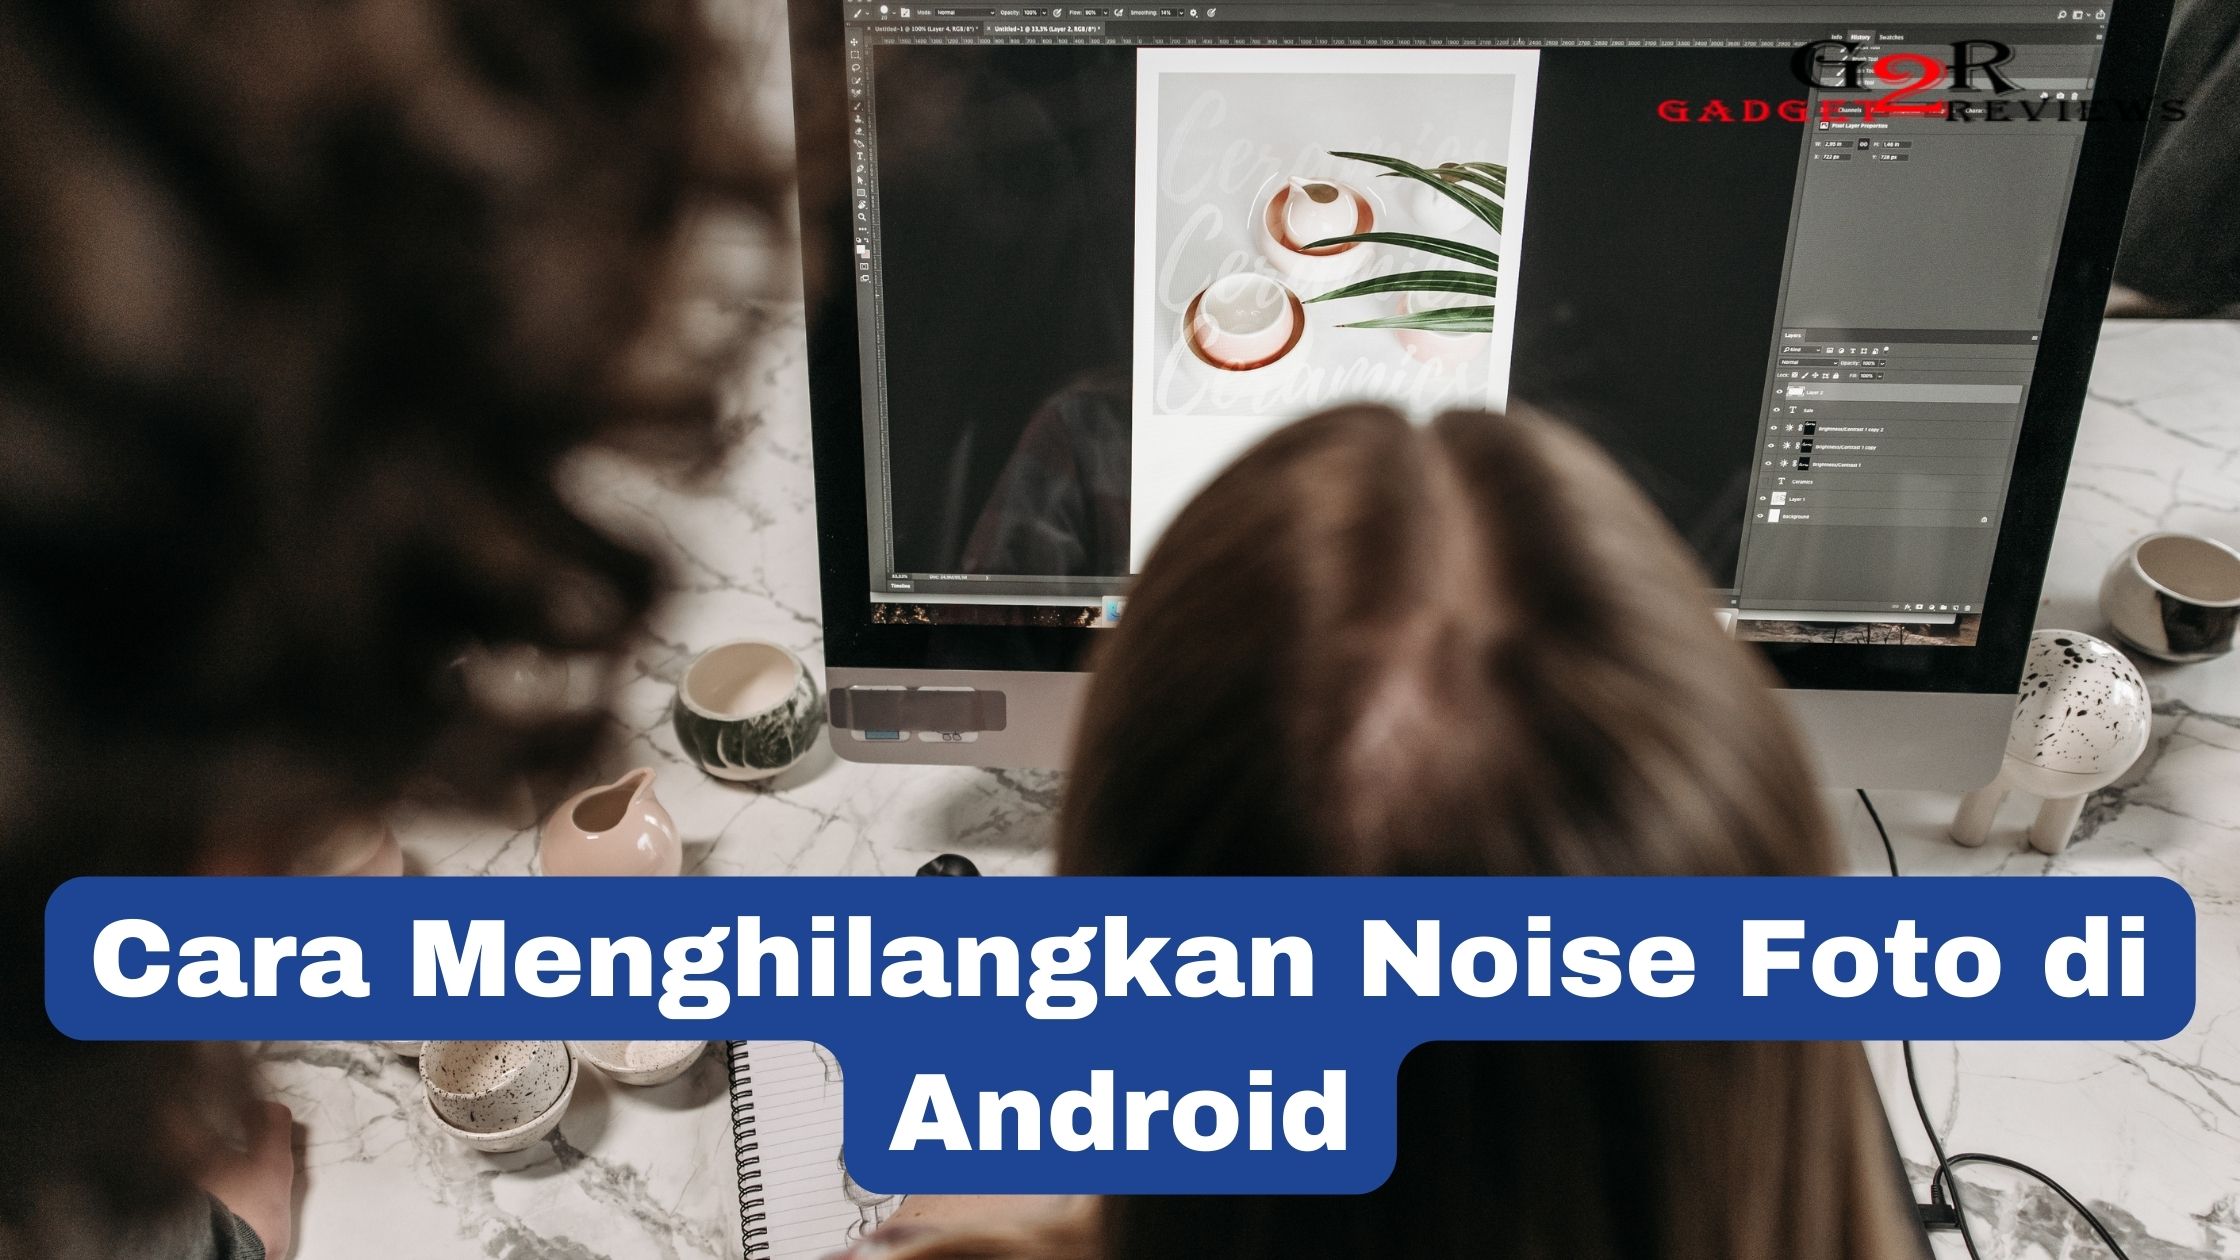 Cara Menghilangkan Noise Foto di Android